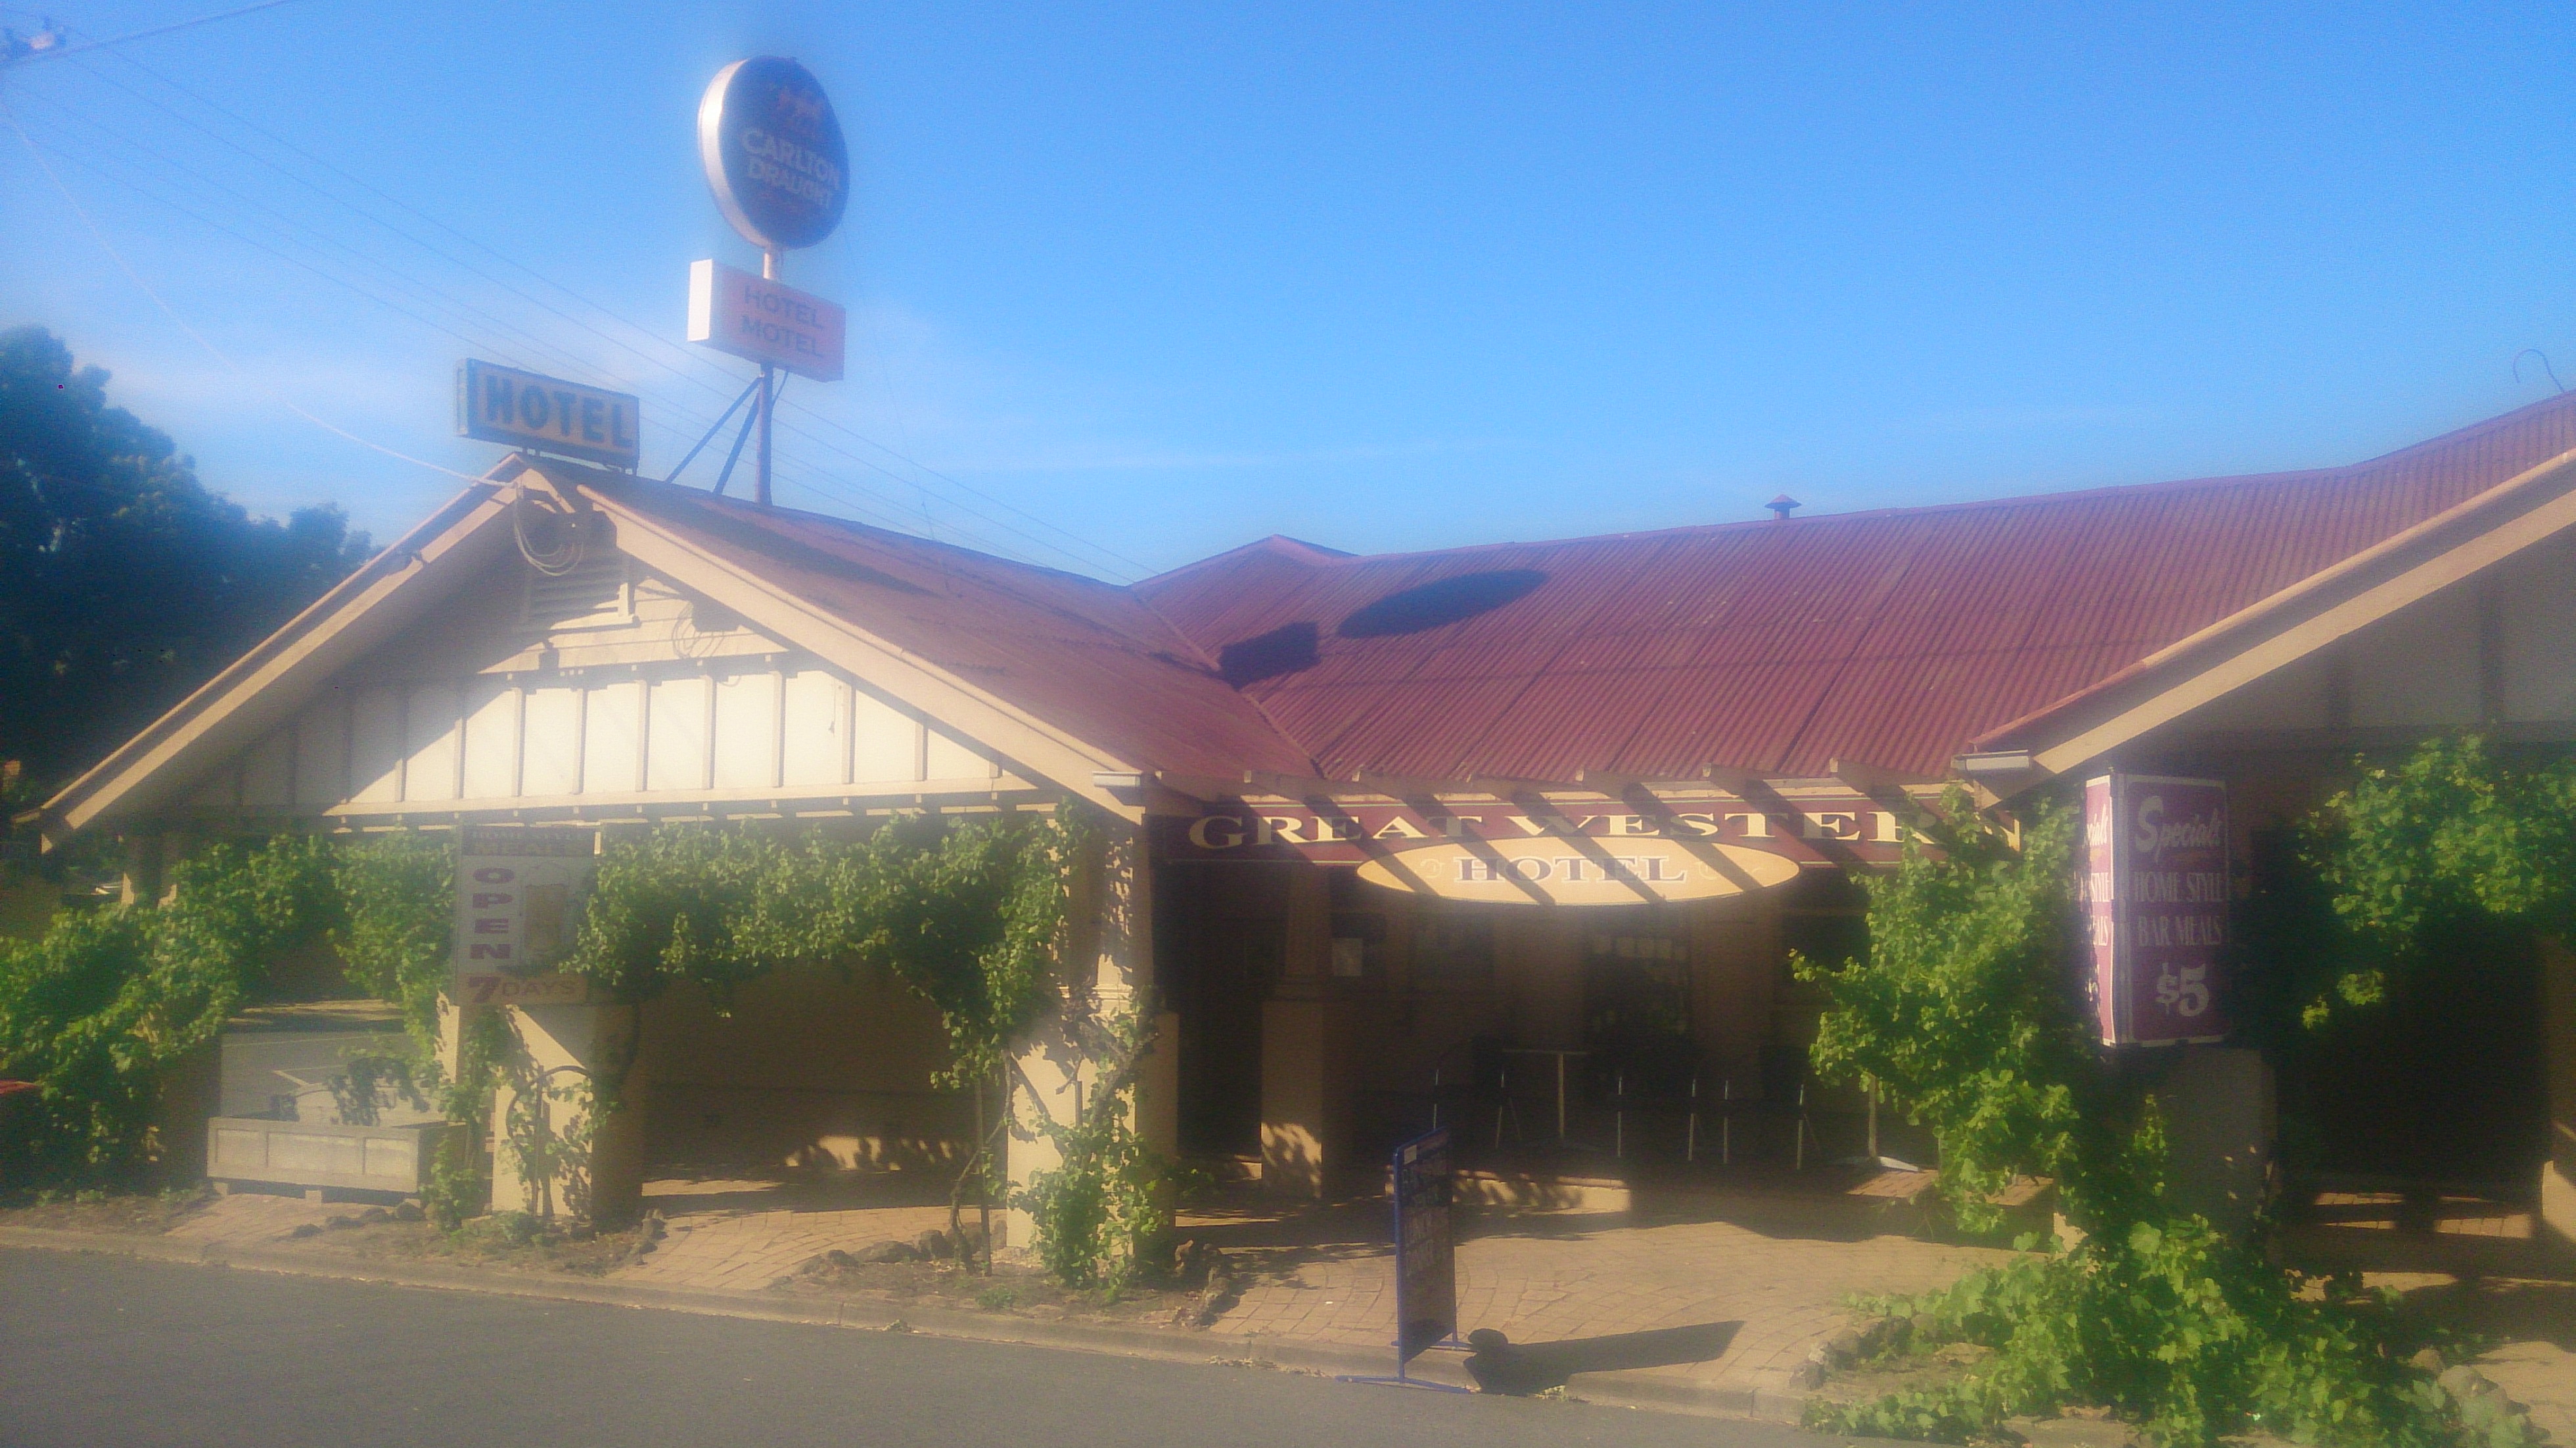 Great Western Hotel Motel - Yamba Accommodation